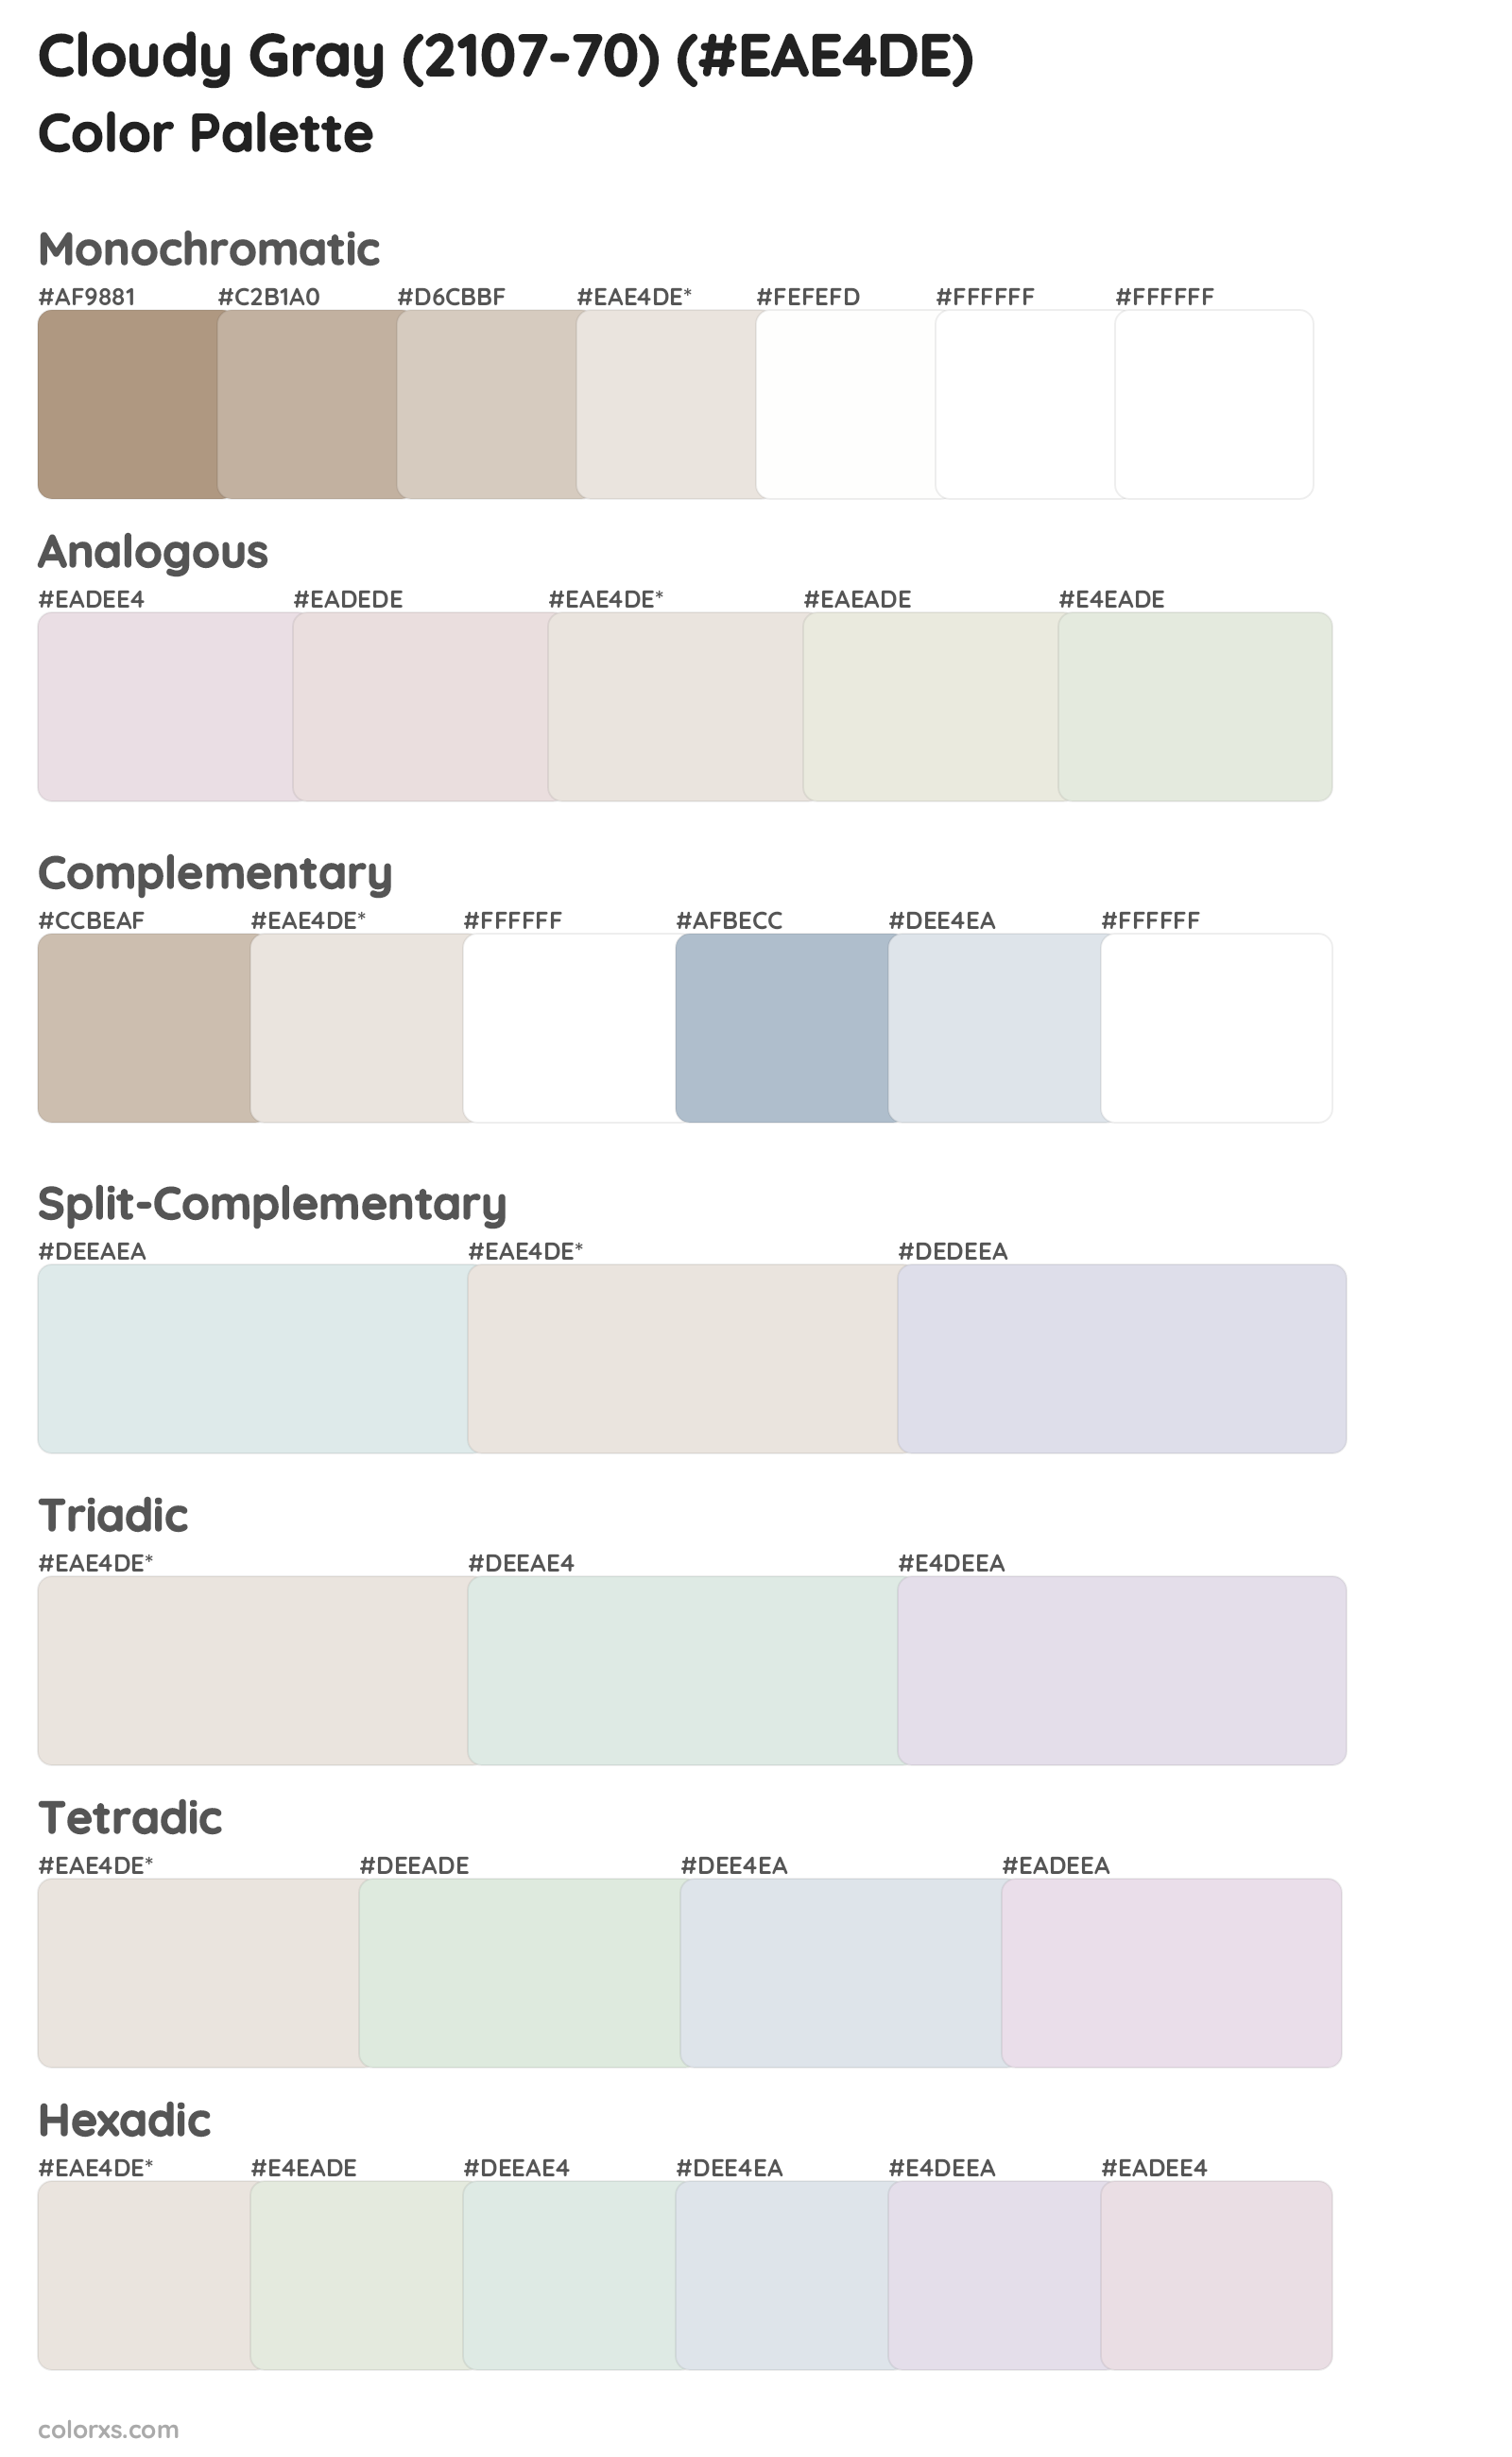 Cloudy Gray (2107-70) Color Scheme Palettes